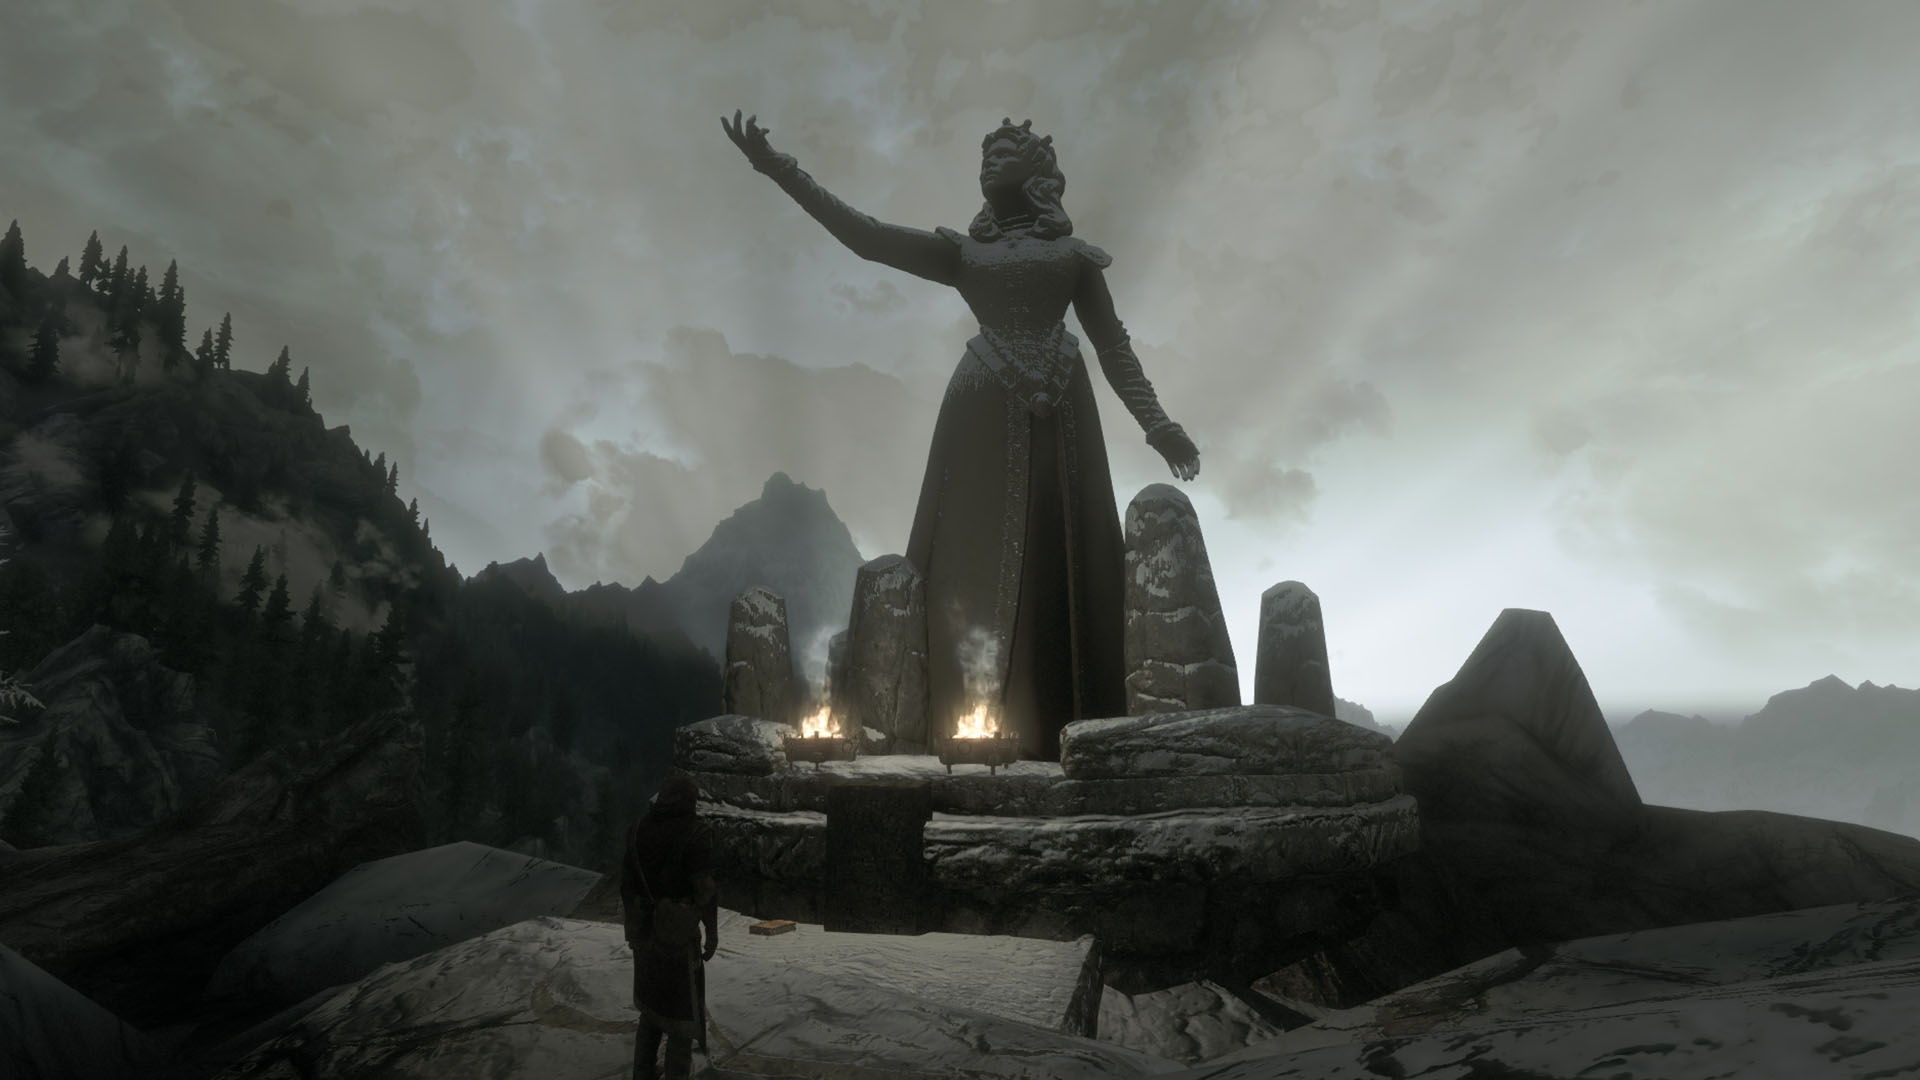 Wintersun Faiths Of Skyrim - Religion And Faith-based Mod Of Elder Scrolls